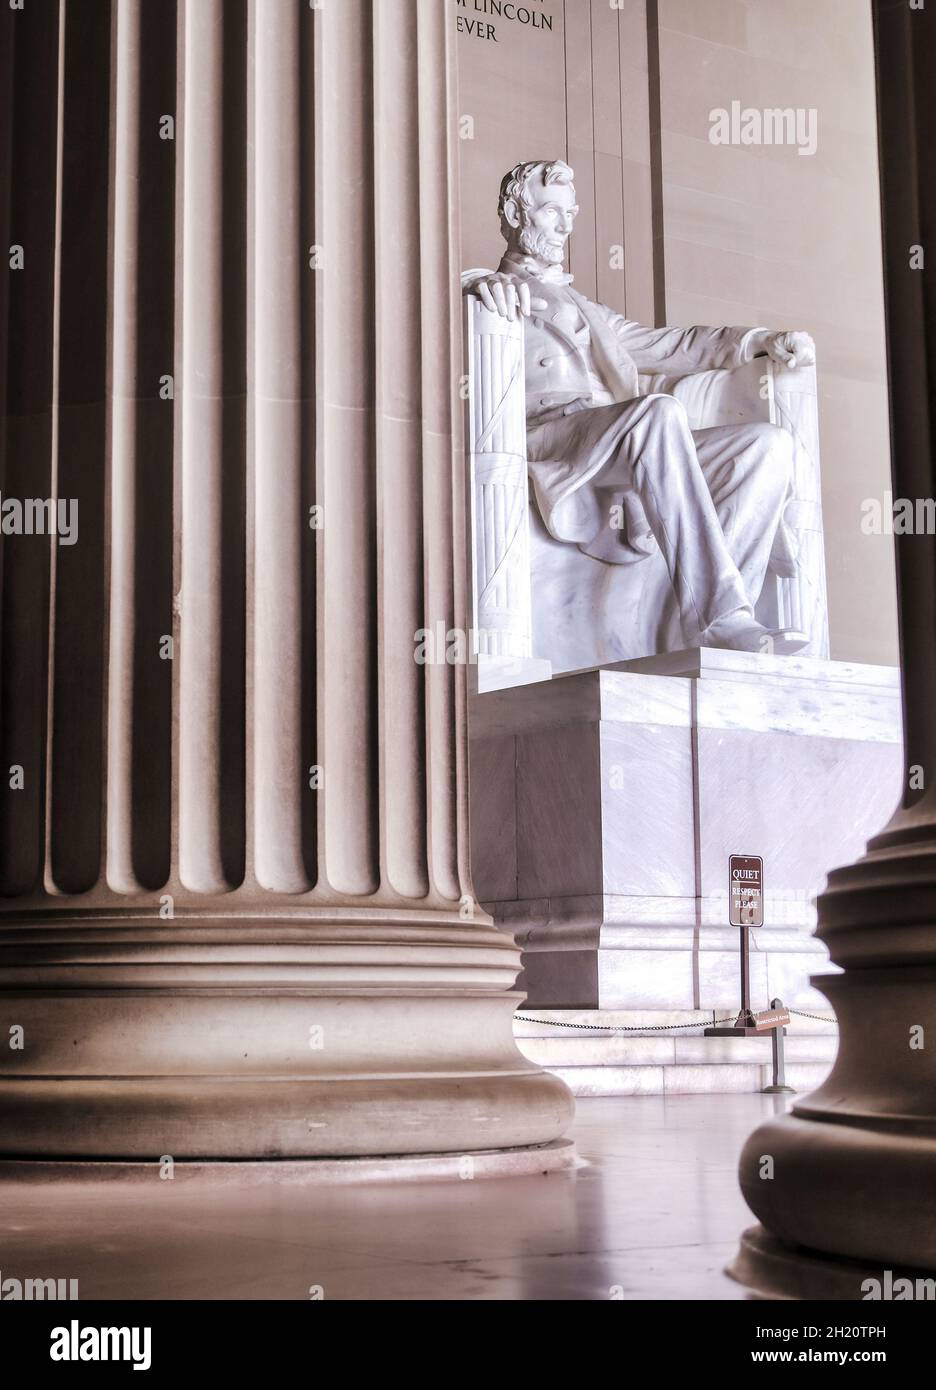 Le Lincoln Memorial sur le National Mall à Washington, D.C. Banque D'Images